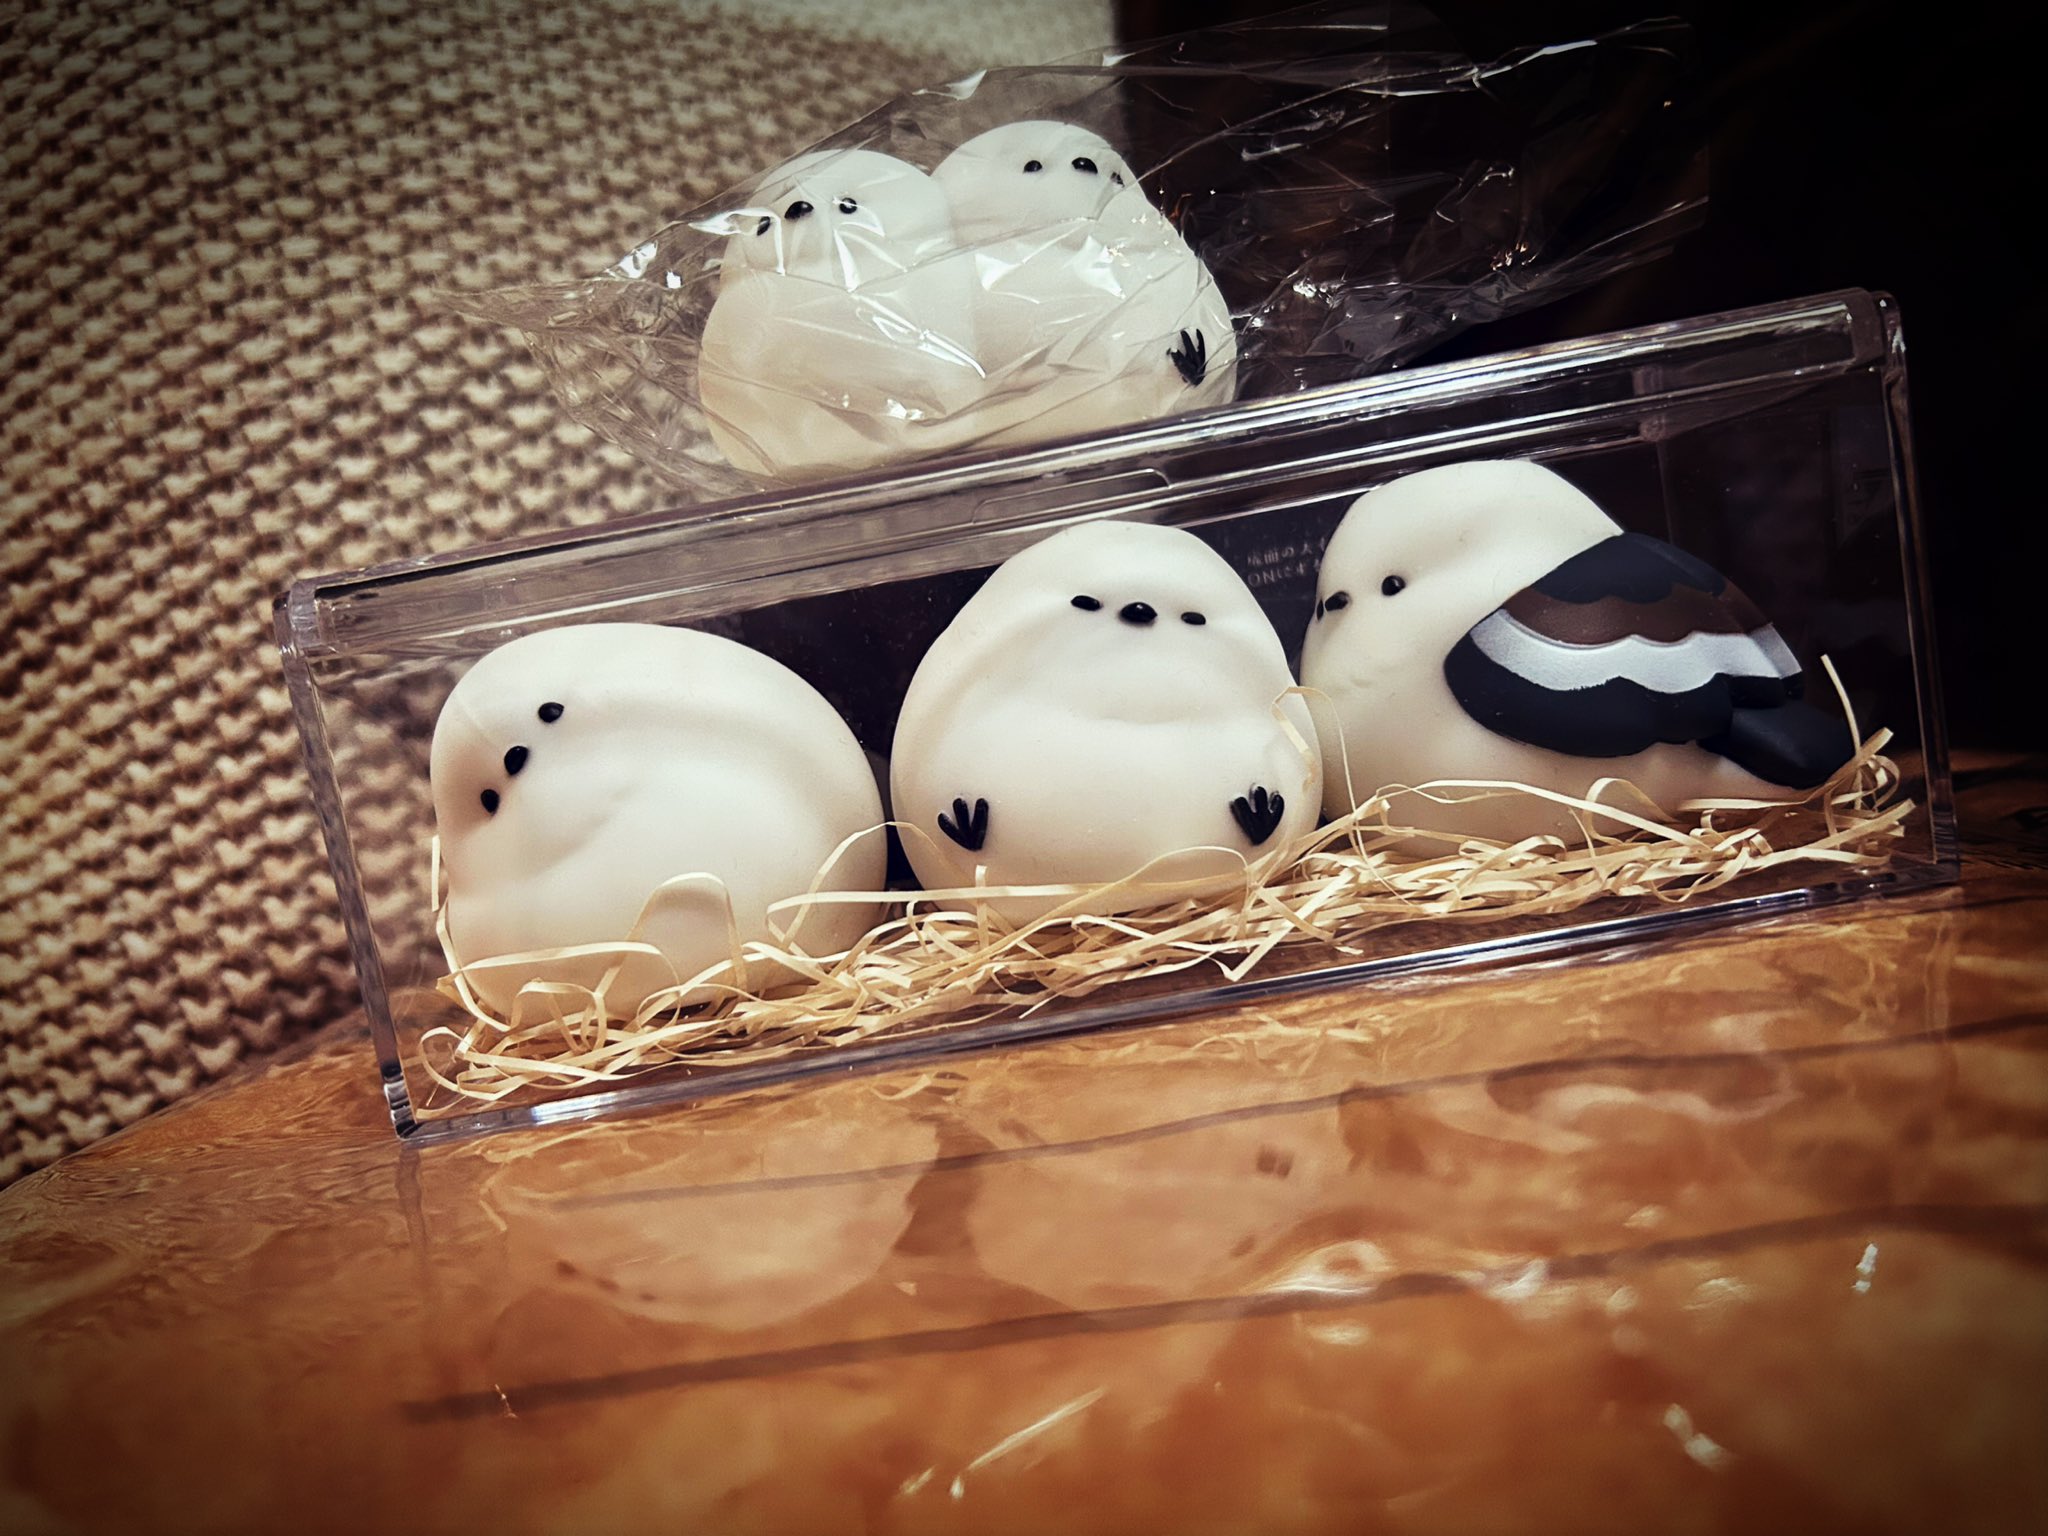 Criez capsule Toys à longues titres doux légers kawaii mignon ronde en se blotant somnolent somnolent shimaenaga figures d'oiseau